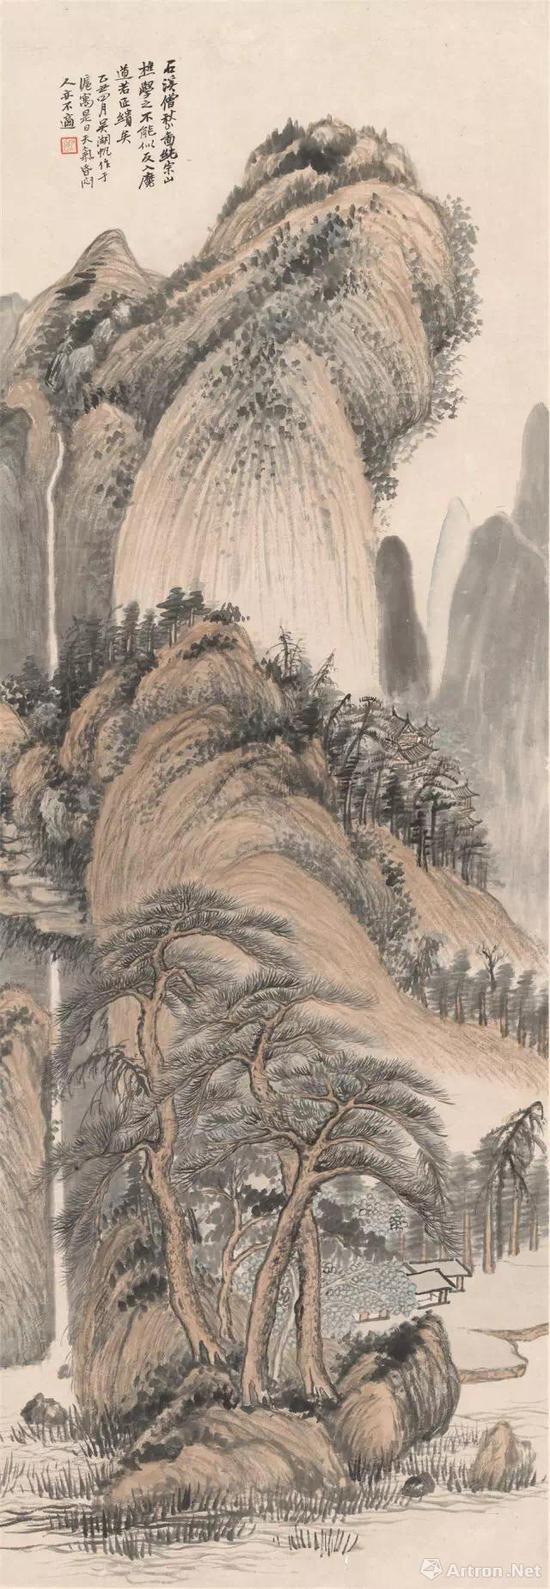 吴湖帆《石溪僧秋山图》 1925年 中华艺术宫藏